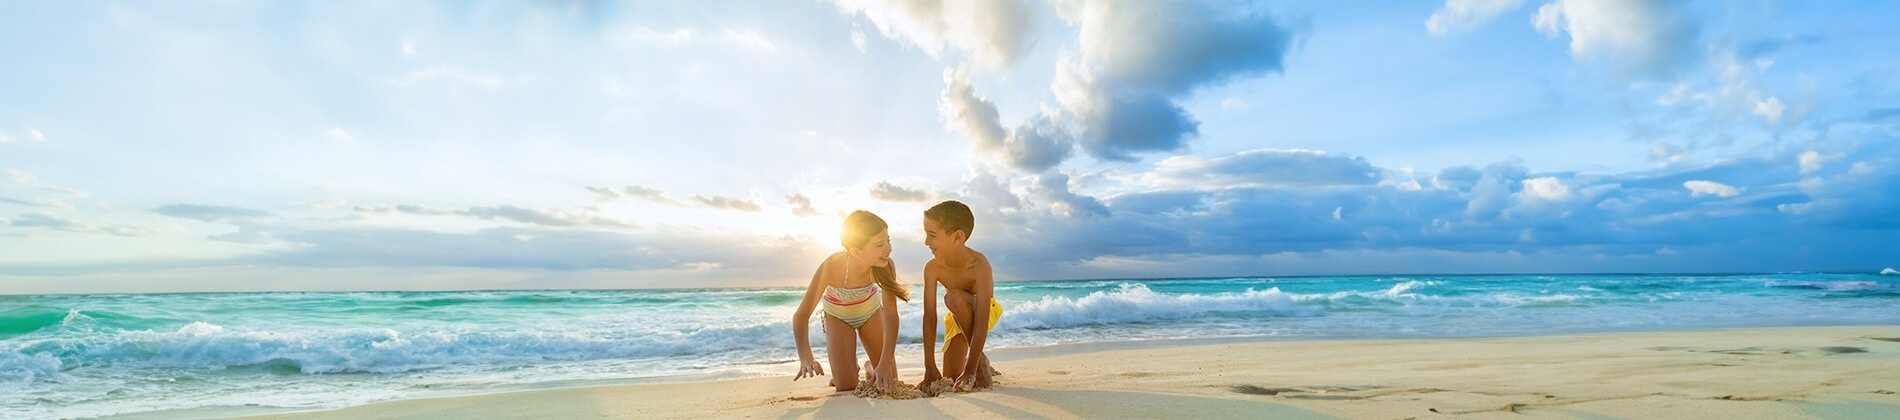 un niño y una niña juegan en la playa con la palabra ofertas de viaje en el fondo